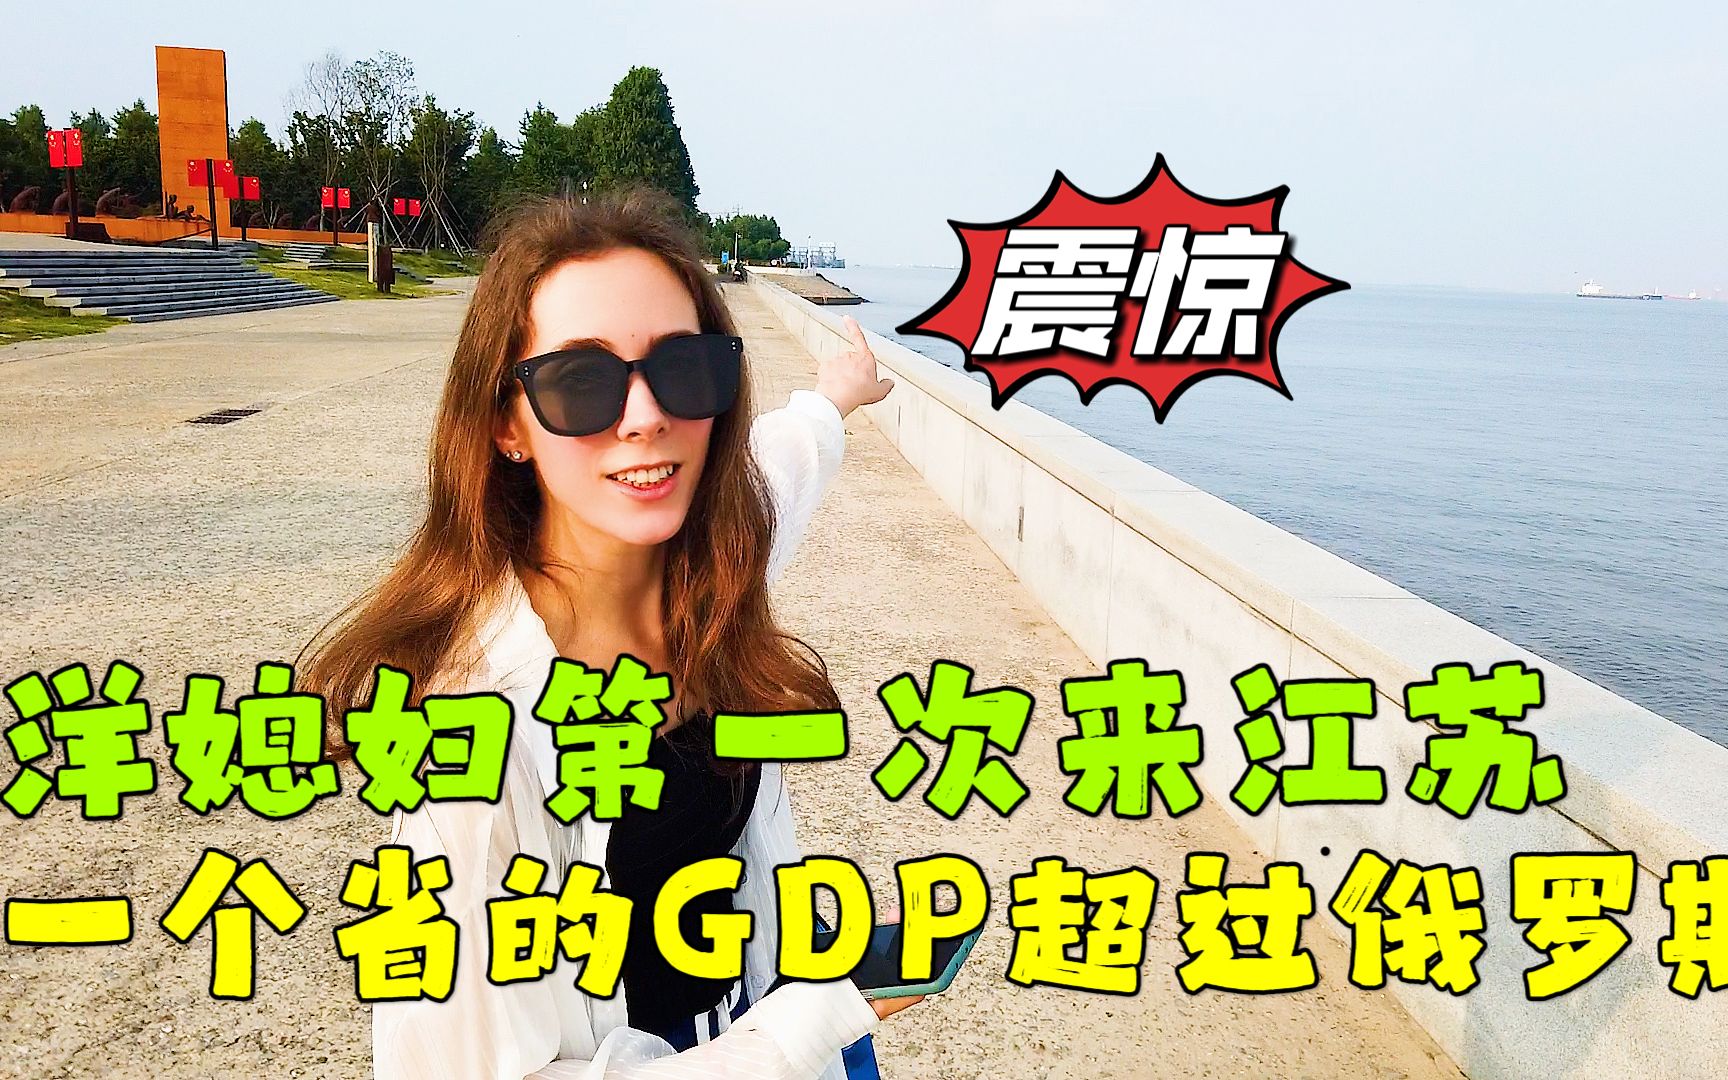 第一次来中国老公老家江苏，被这里的发展震惊了：一个省的GDP竟然超过整个俄罗斯！